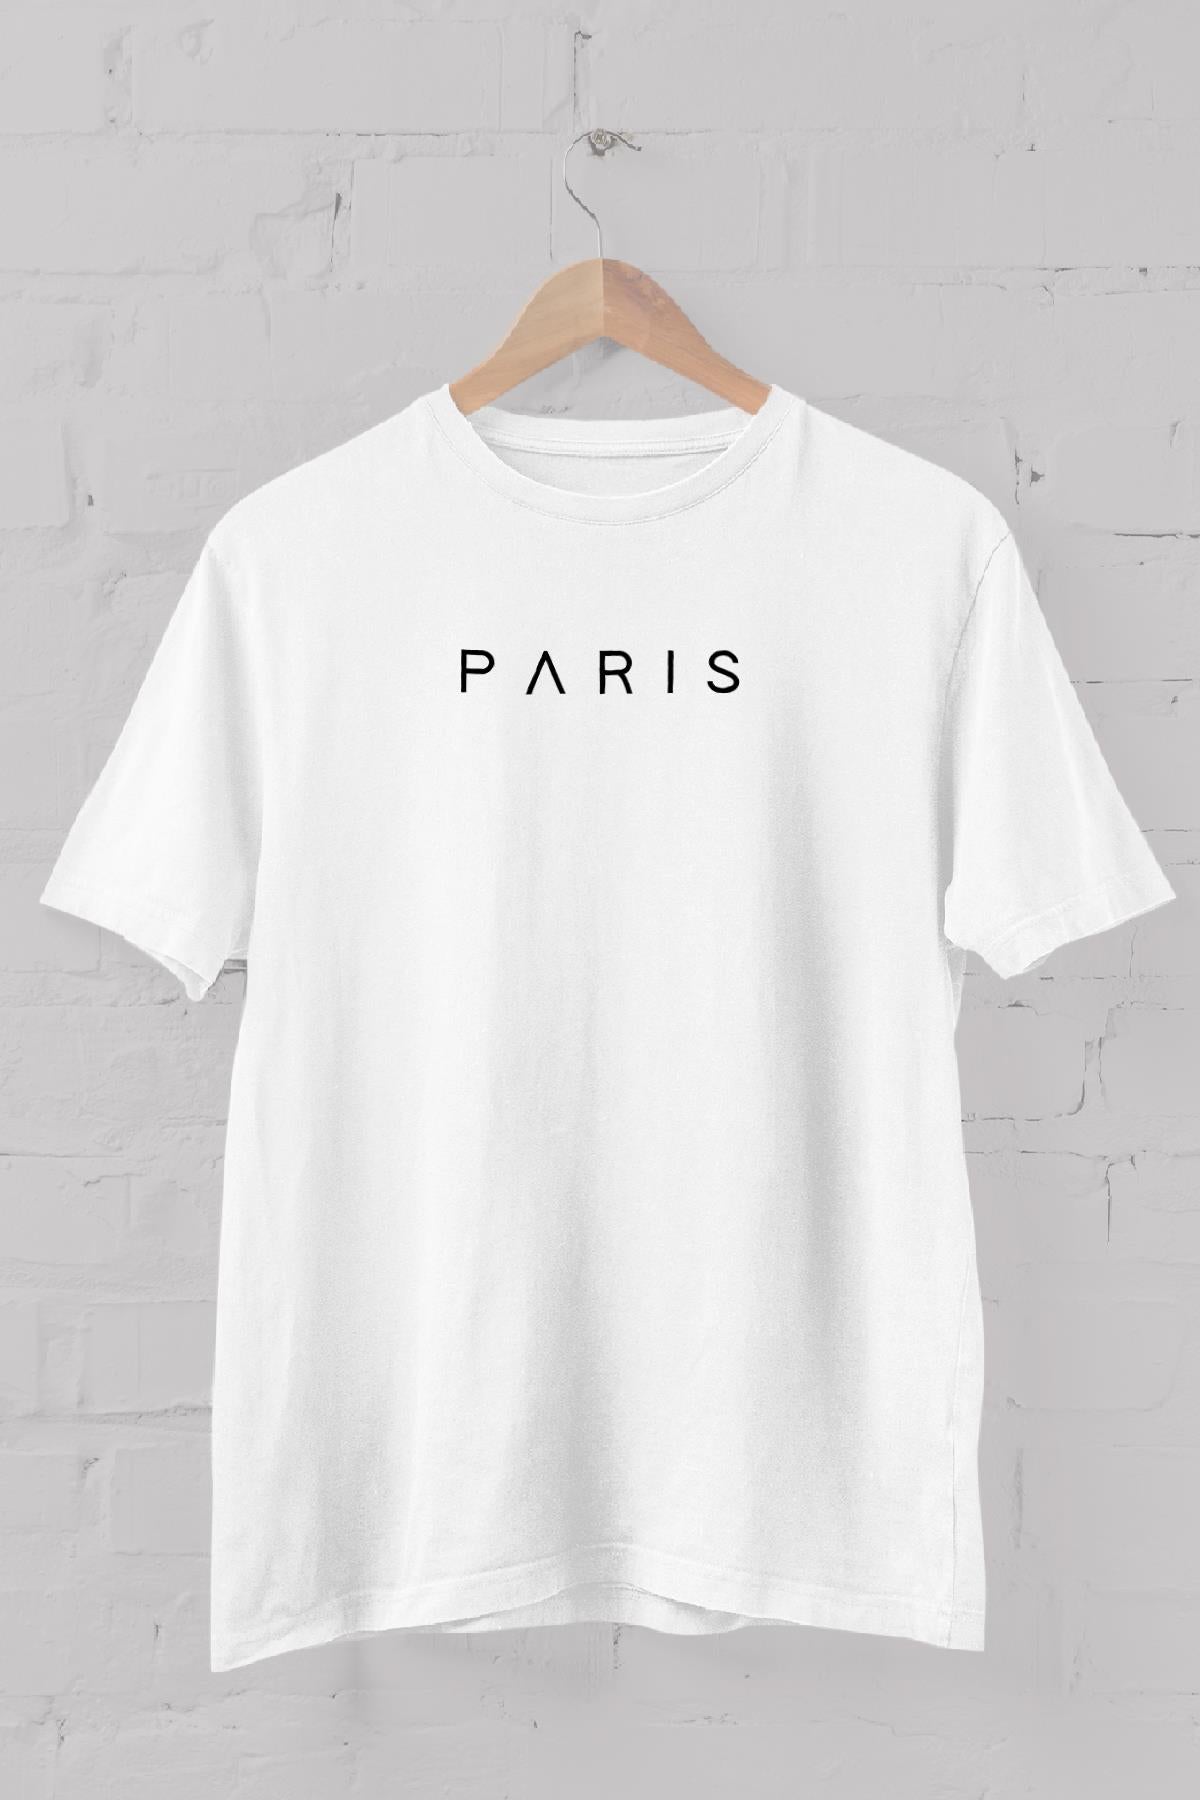 Paris printed Crew Neck men's T -shirt